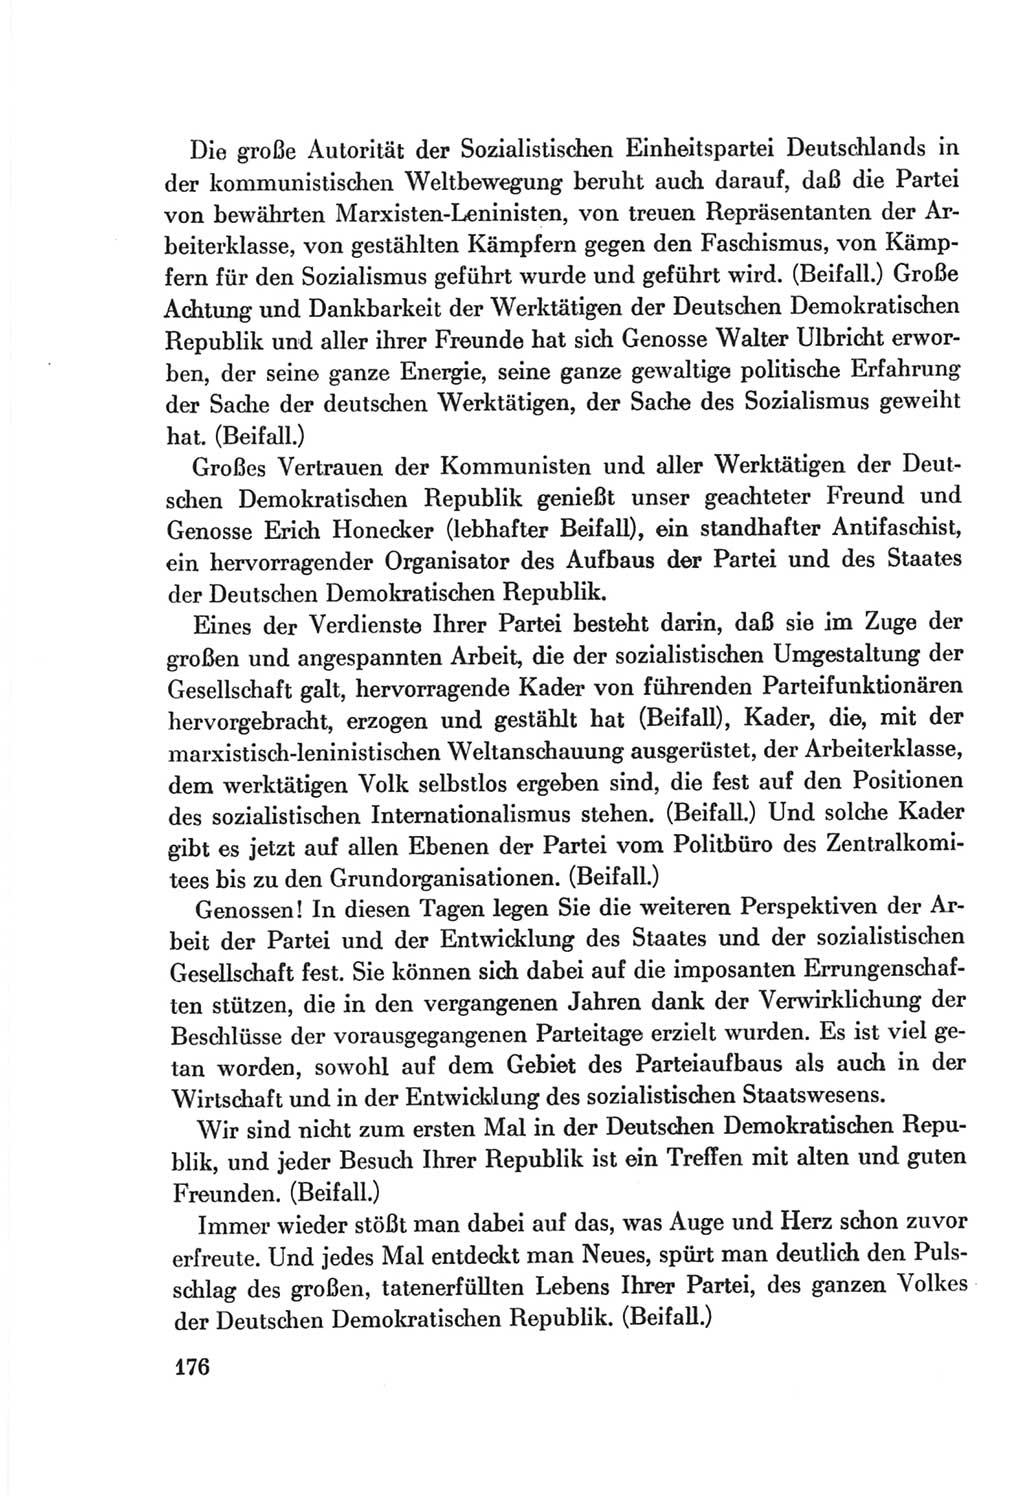 Protokoll der Verhandlungen des Ⅷ. Parteitages der Sozialistischen Einheitspartei Deutschlands (SED) [Deutsche Demokratische Republik (DDR)] 1971, Band 1, Seite 176 (Prot. Verh. Ⅷ. PT SED DDR 1971, Bd. 1, S. 176)